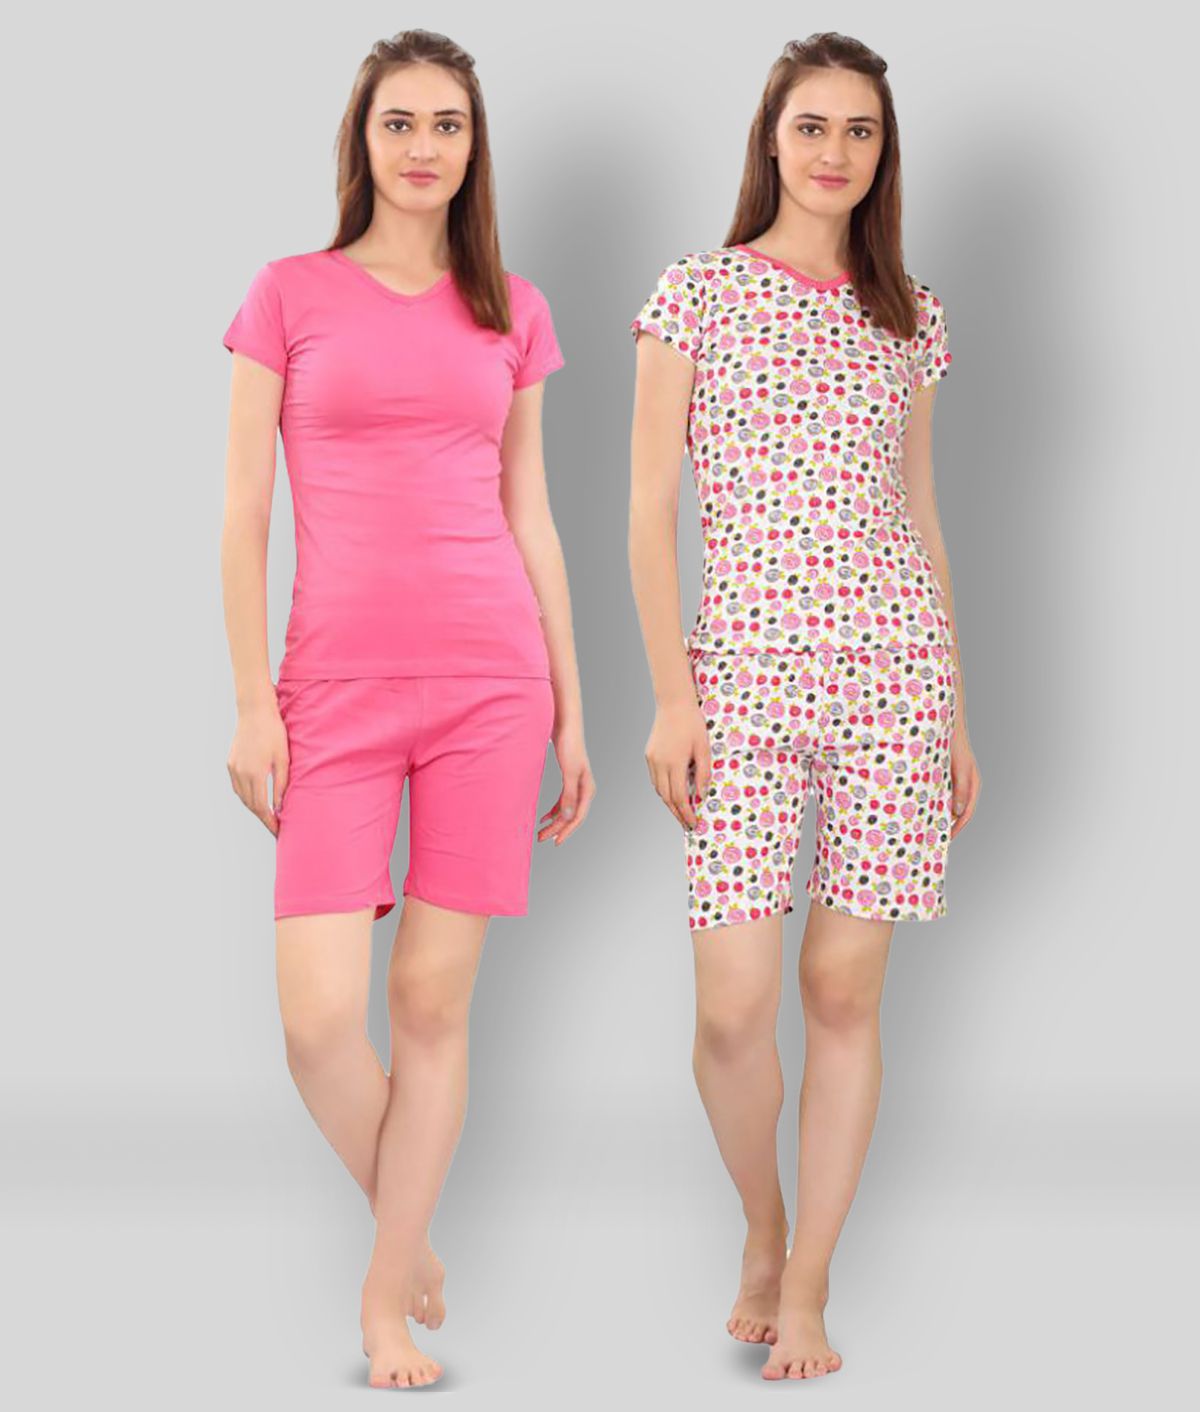 Zebu - Multicolor Cotton Women's Nightwear Night Shorts